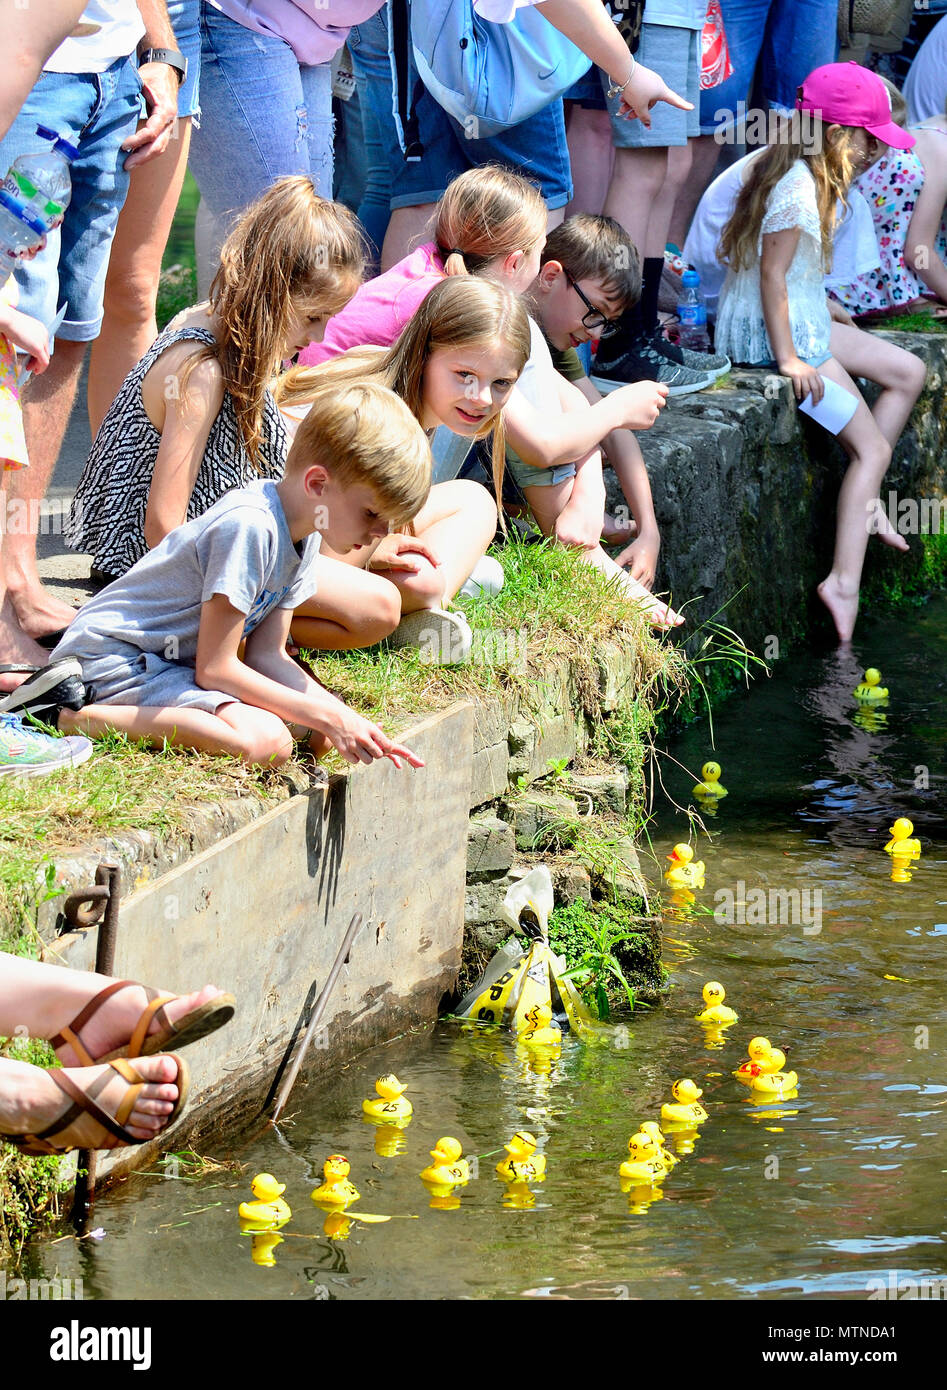 La course de canards banque mai Maison de vacances dans Village lâche, Kent. L'enfant regarde les canards col lâche sur Brooks à l'événement annuel. Banque D'Images